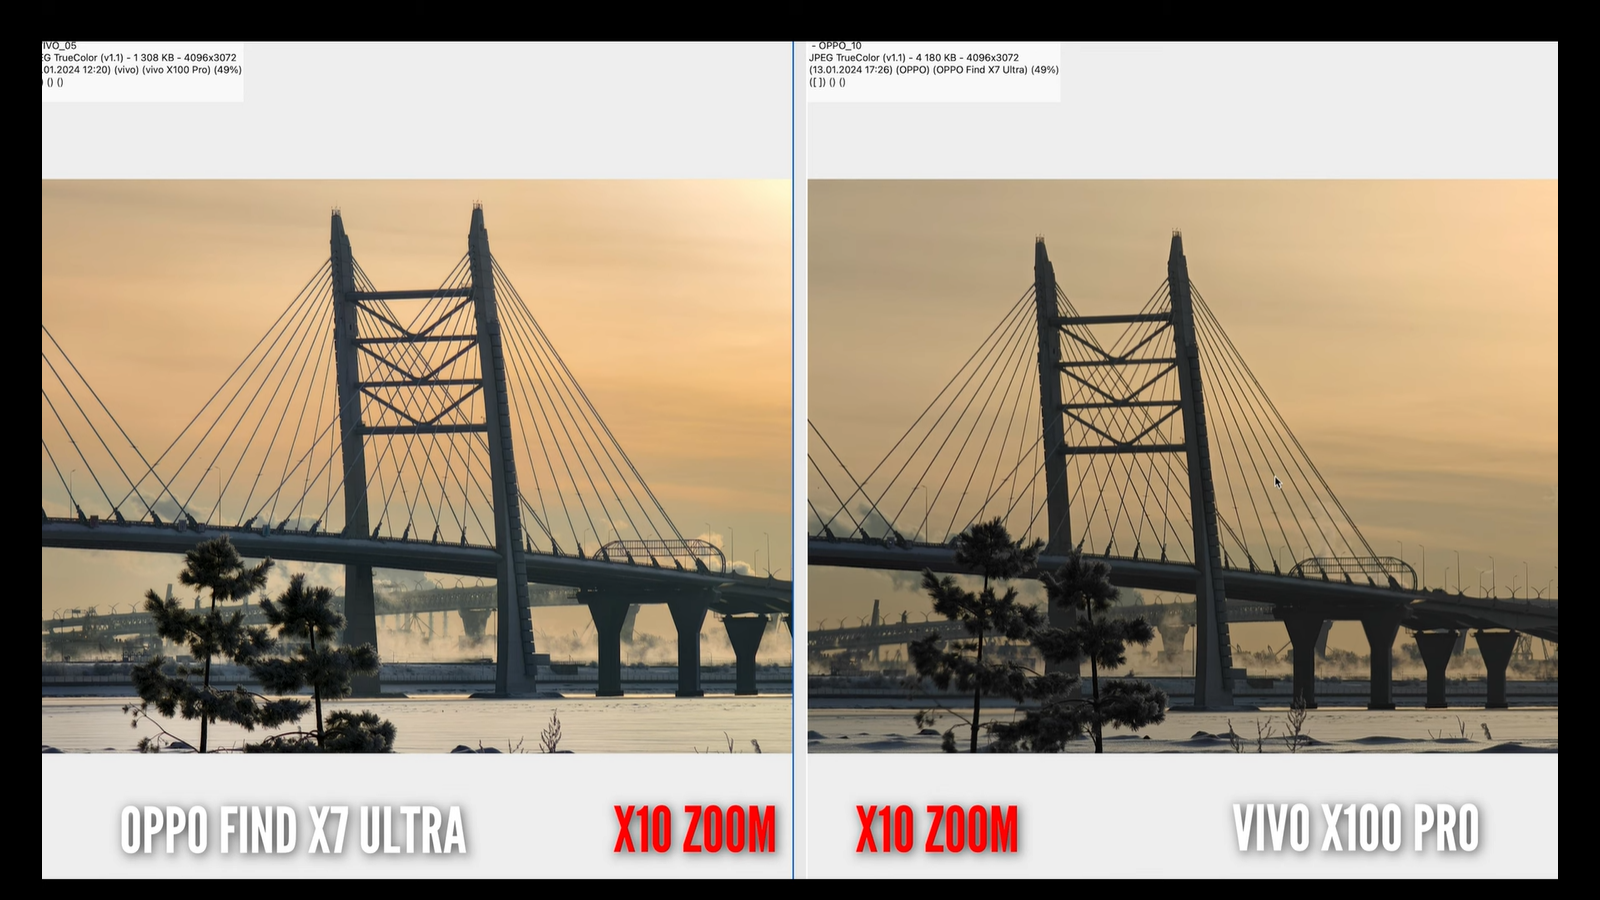 Китайские смартфоны с лучшими камерами - Vivo X100 Pro и Oppo Find X7 Ultra - сравнили10